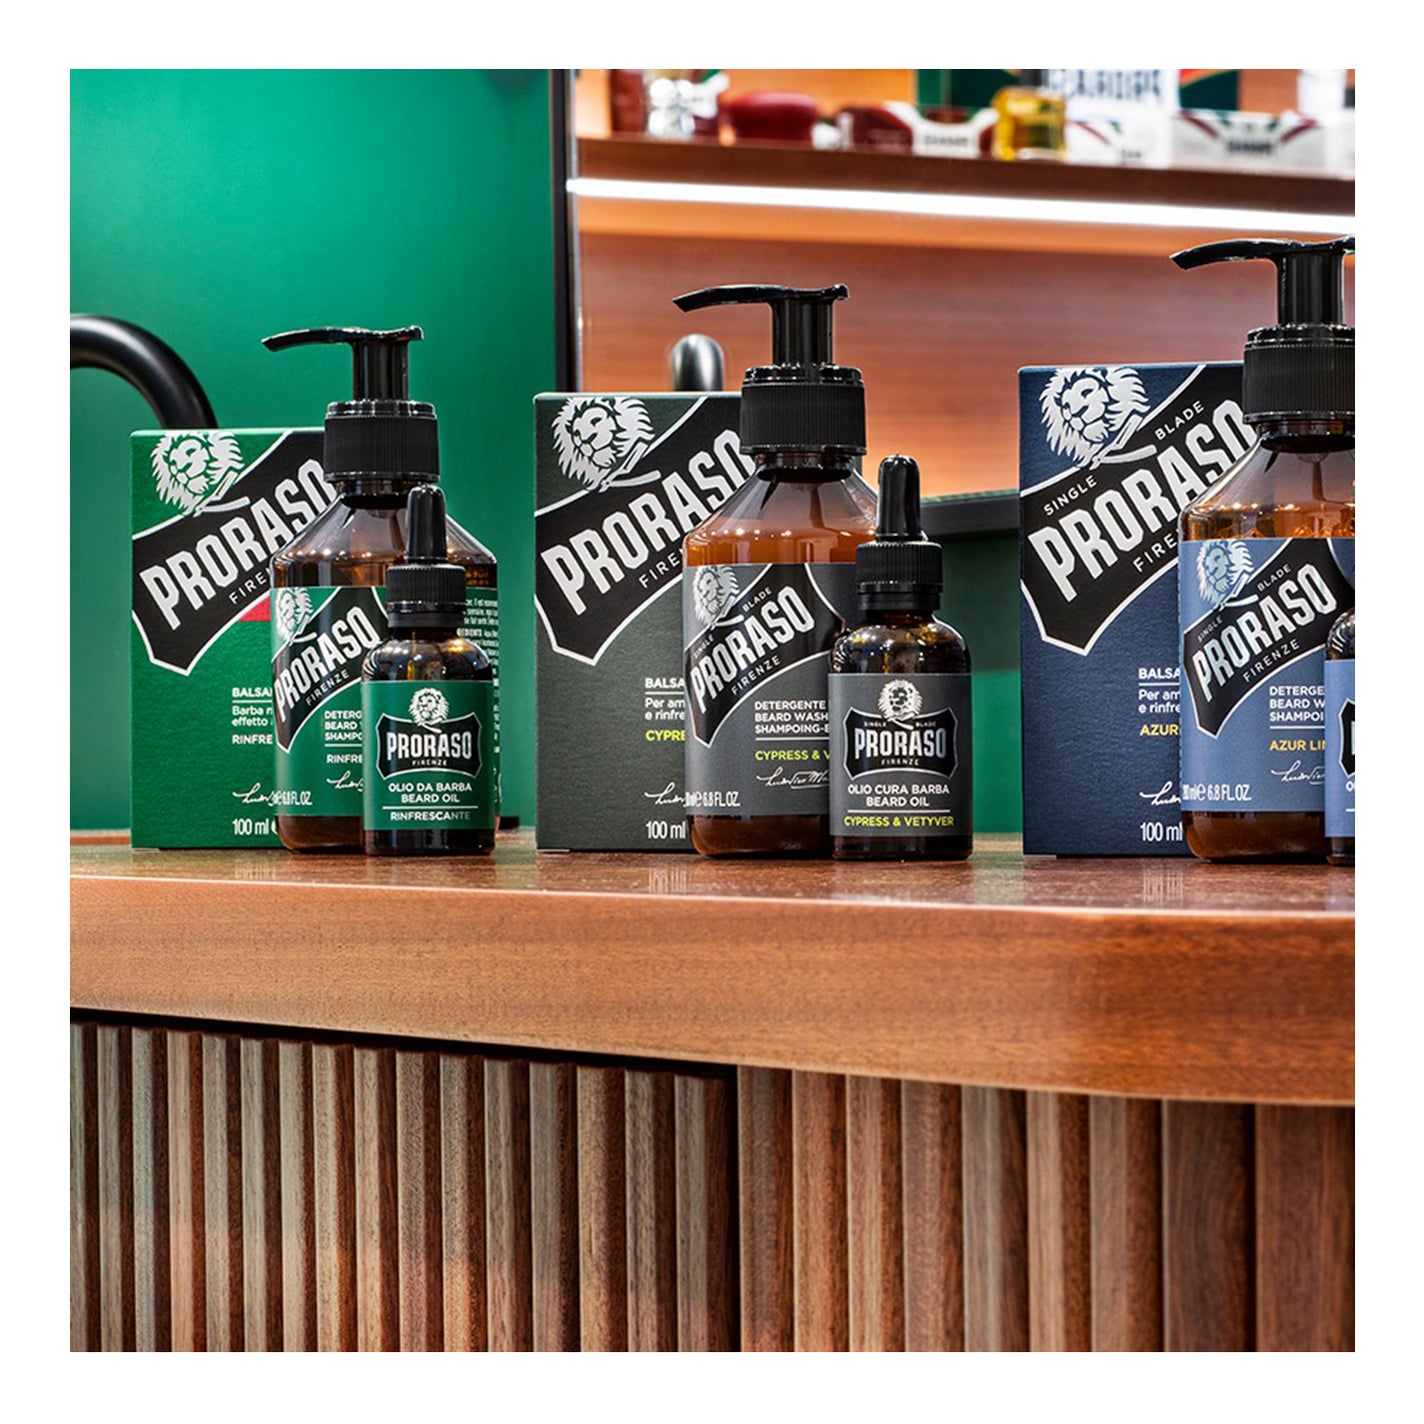 Proraso Beard Oil - Cypress + Vetiver